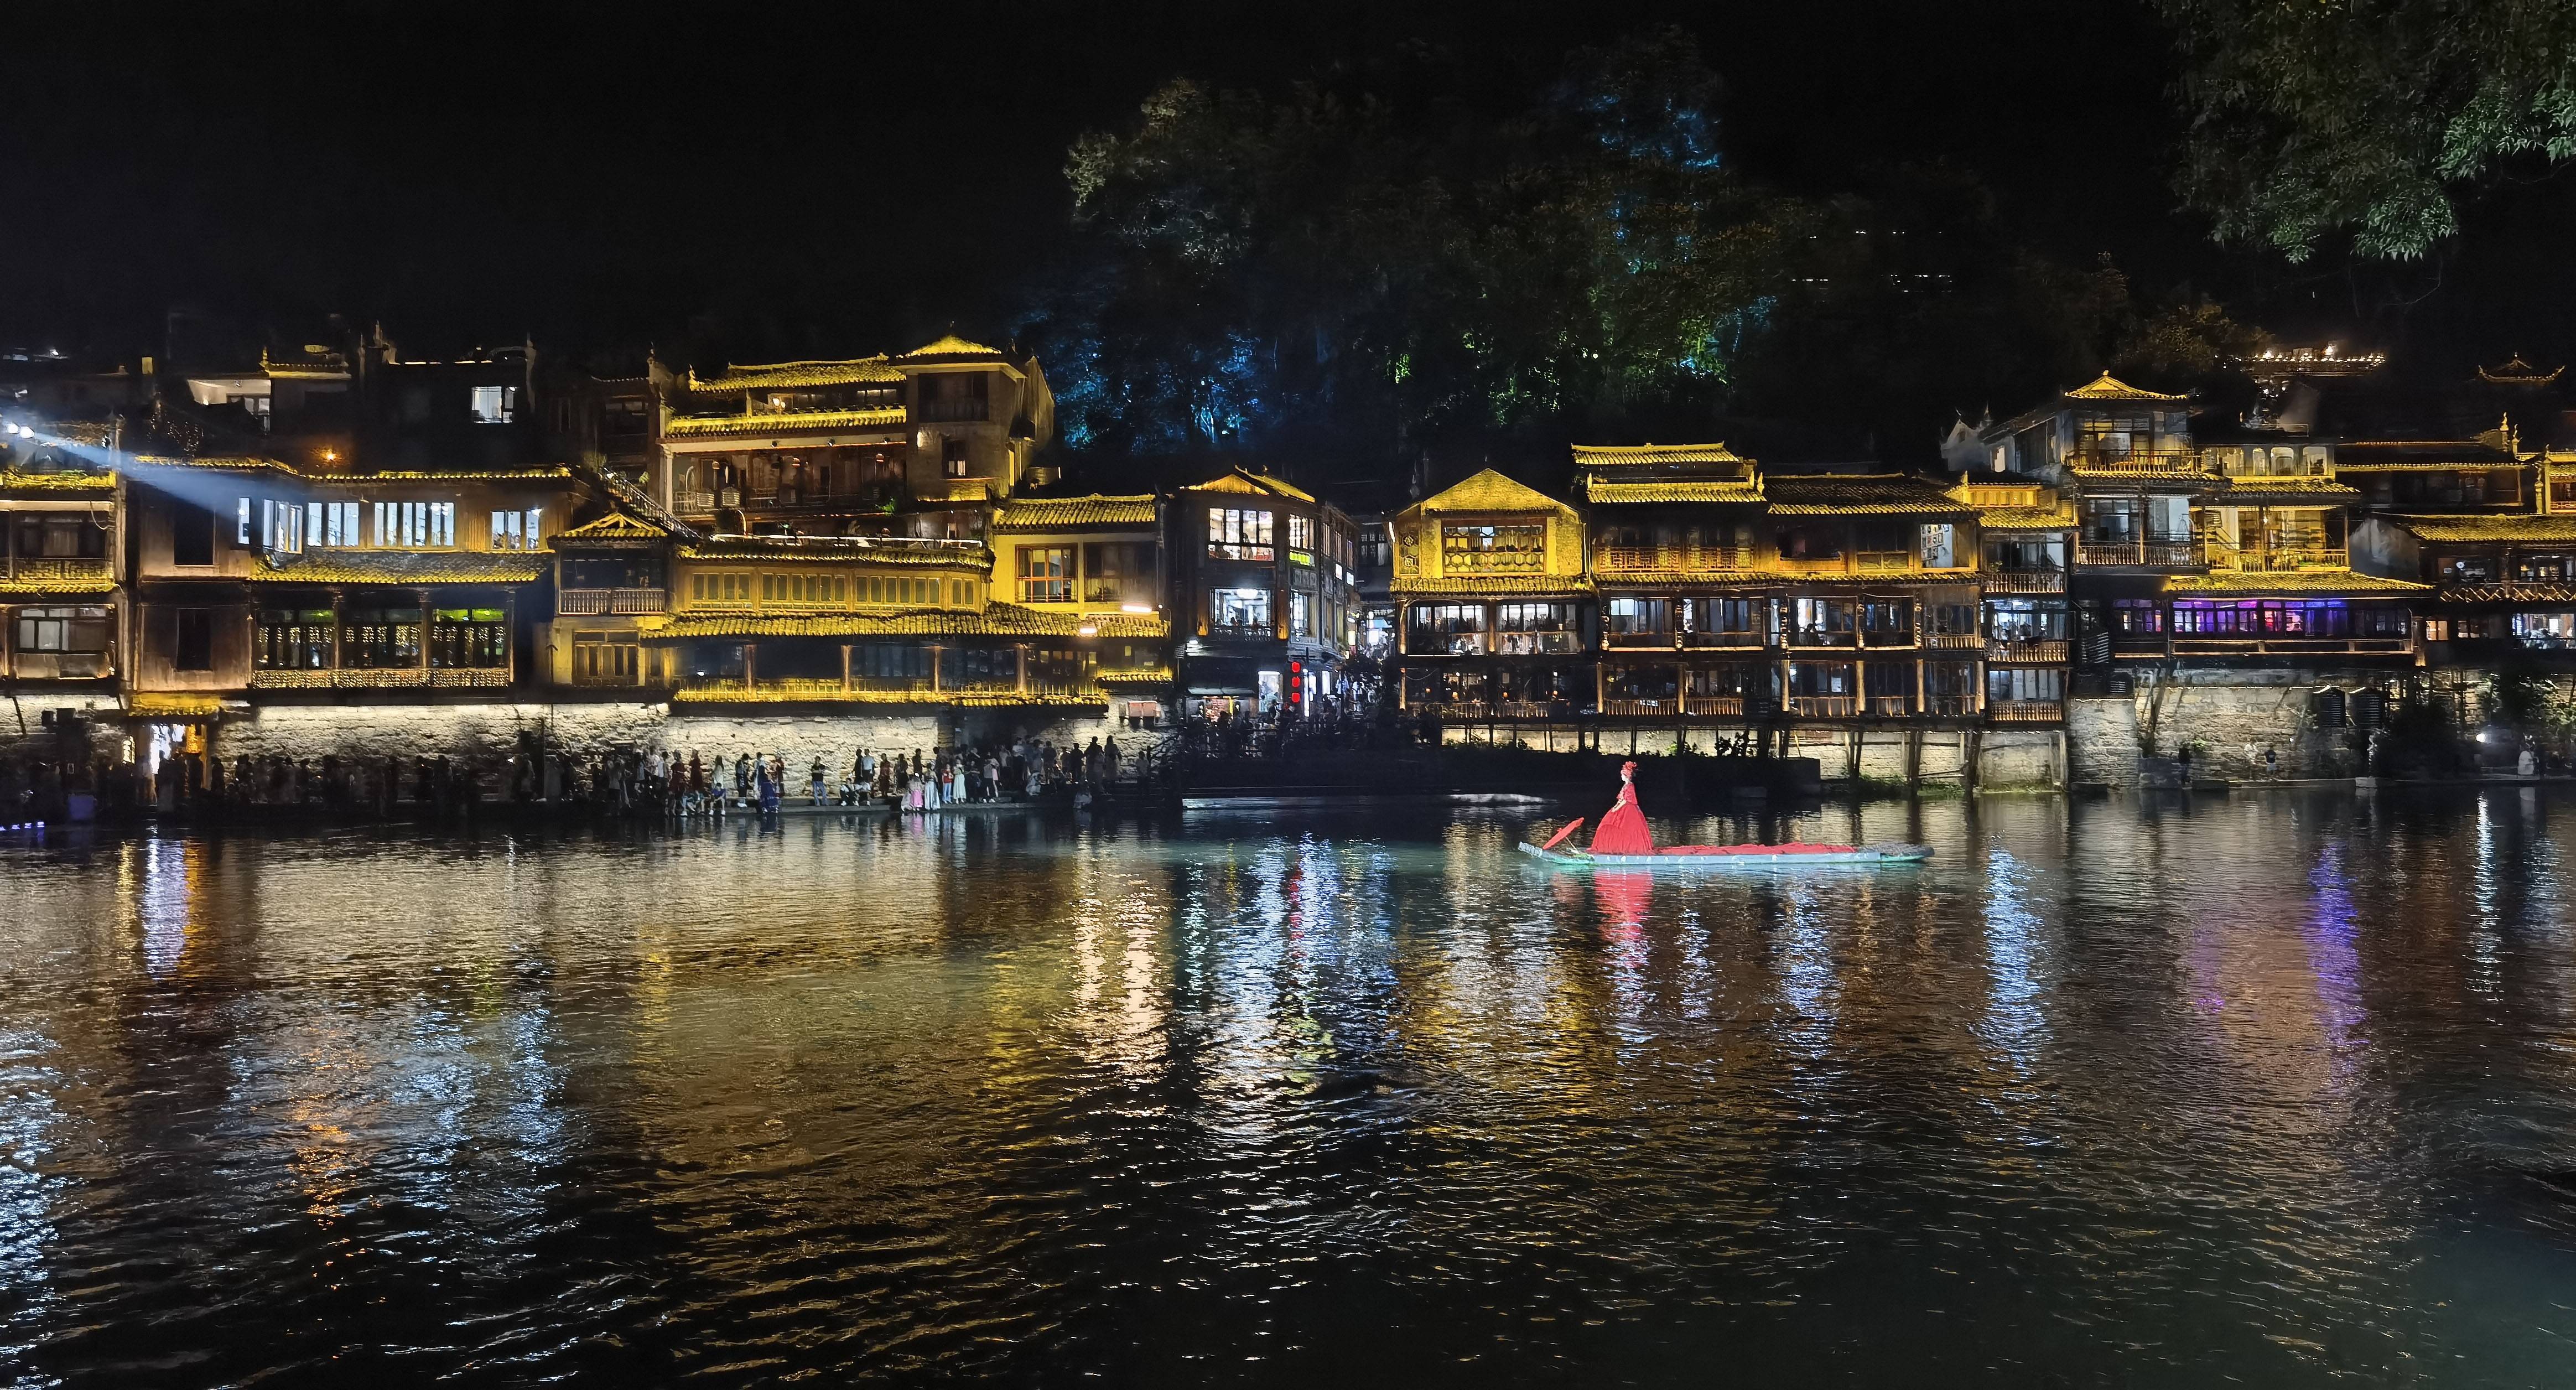 每到夜晚,凤凰古城沱江两岸灯光璀璨,美景如画,吸引众多游客前来感受